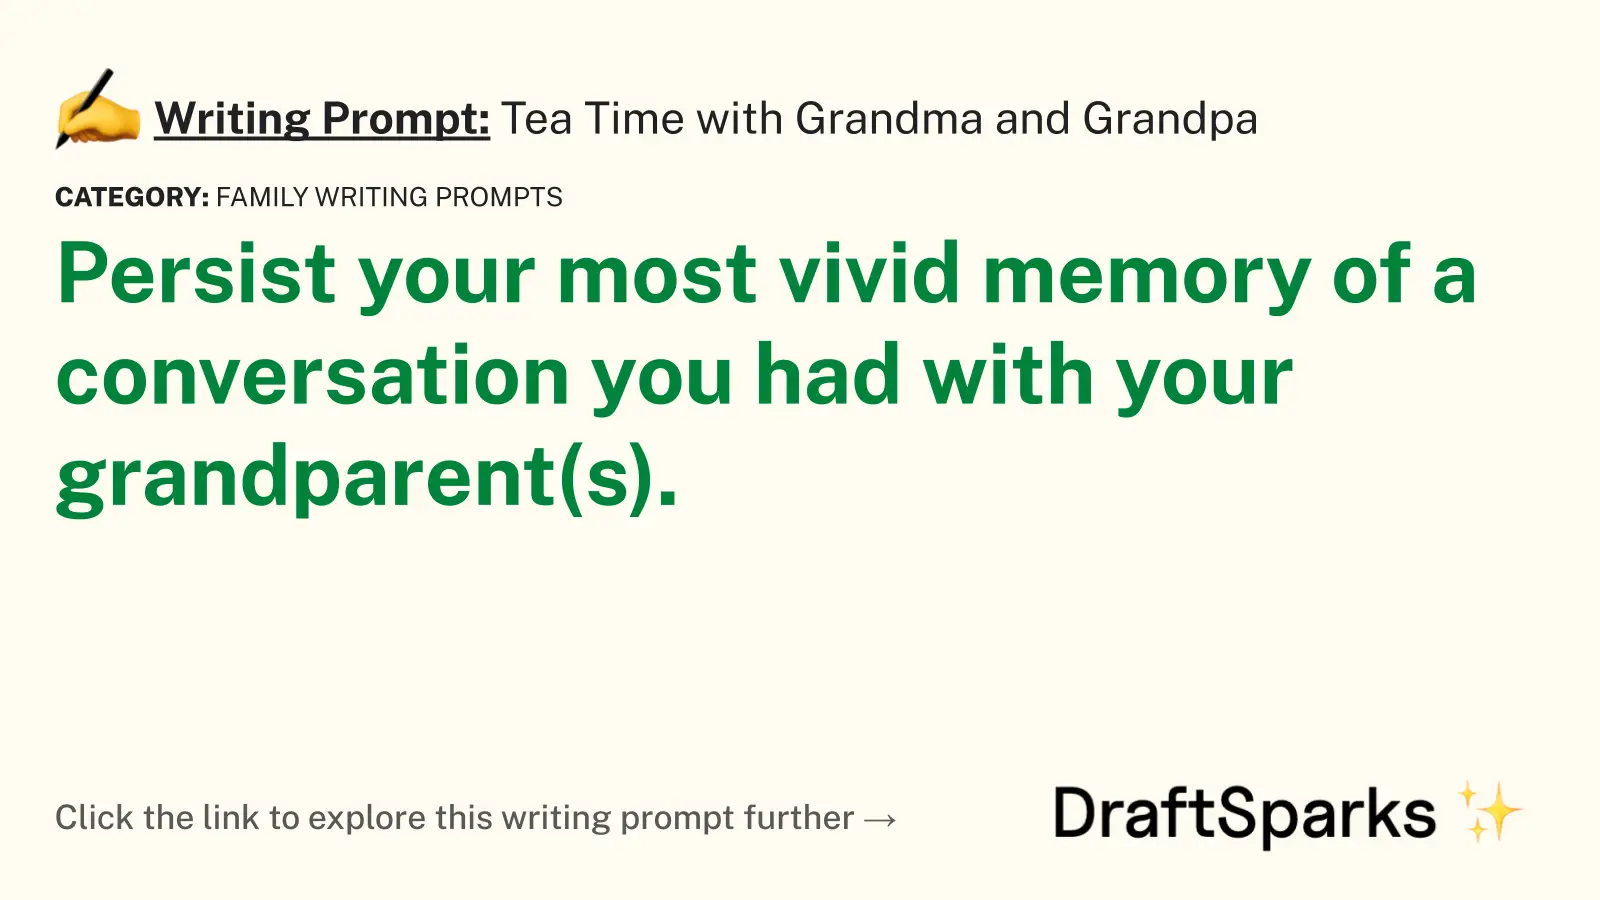 Tea Time with Grandma and Grandpa